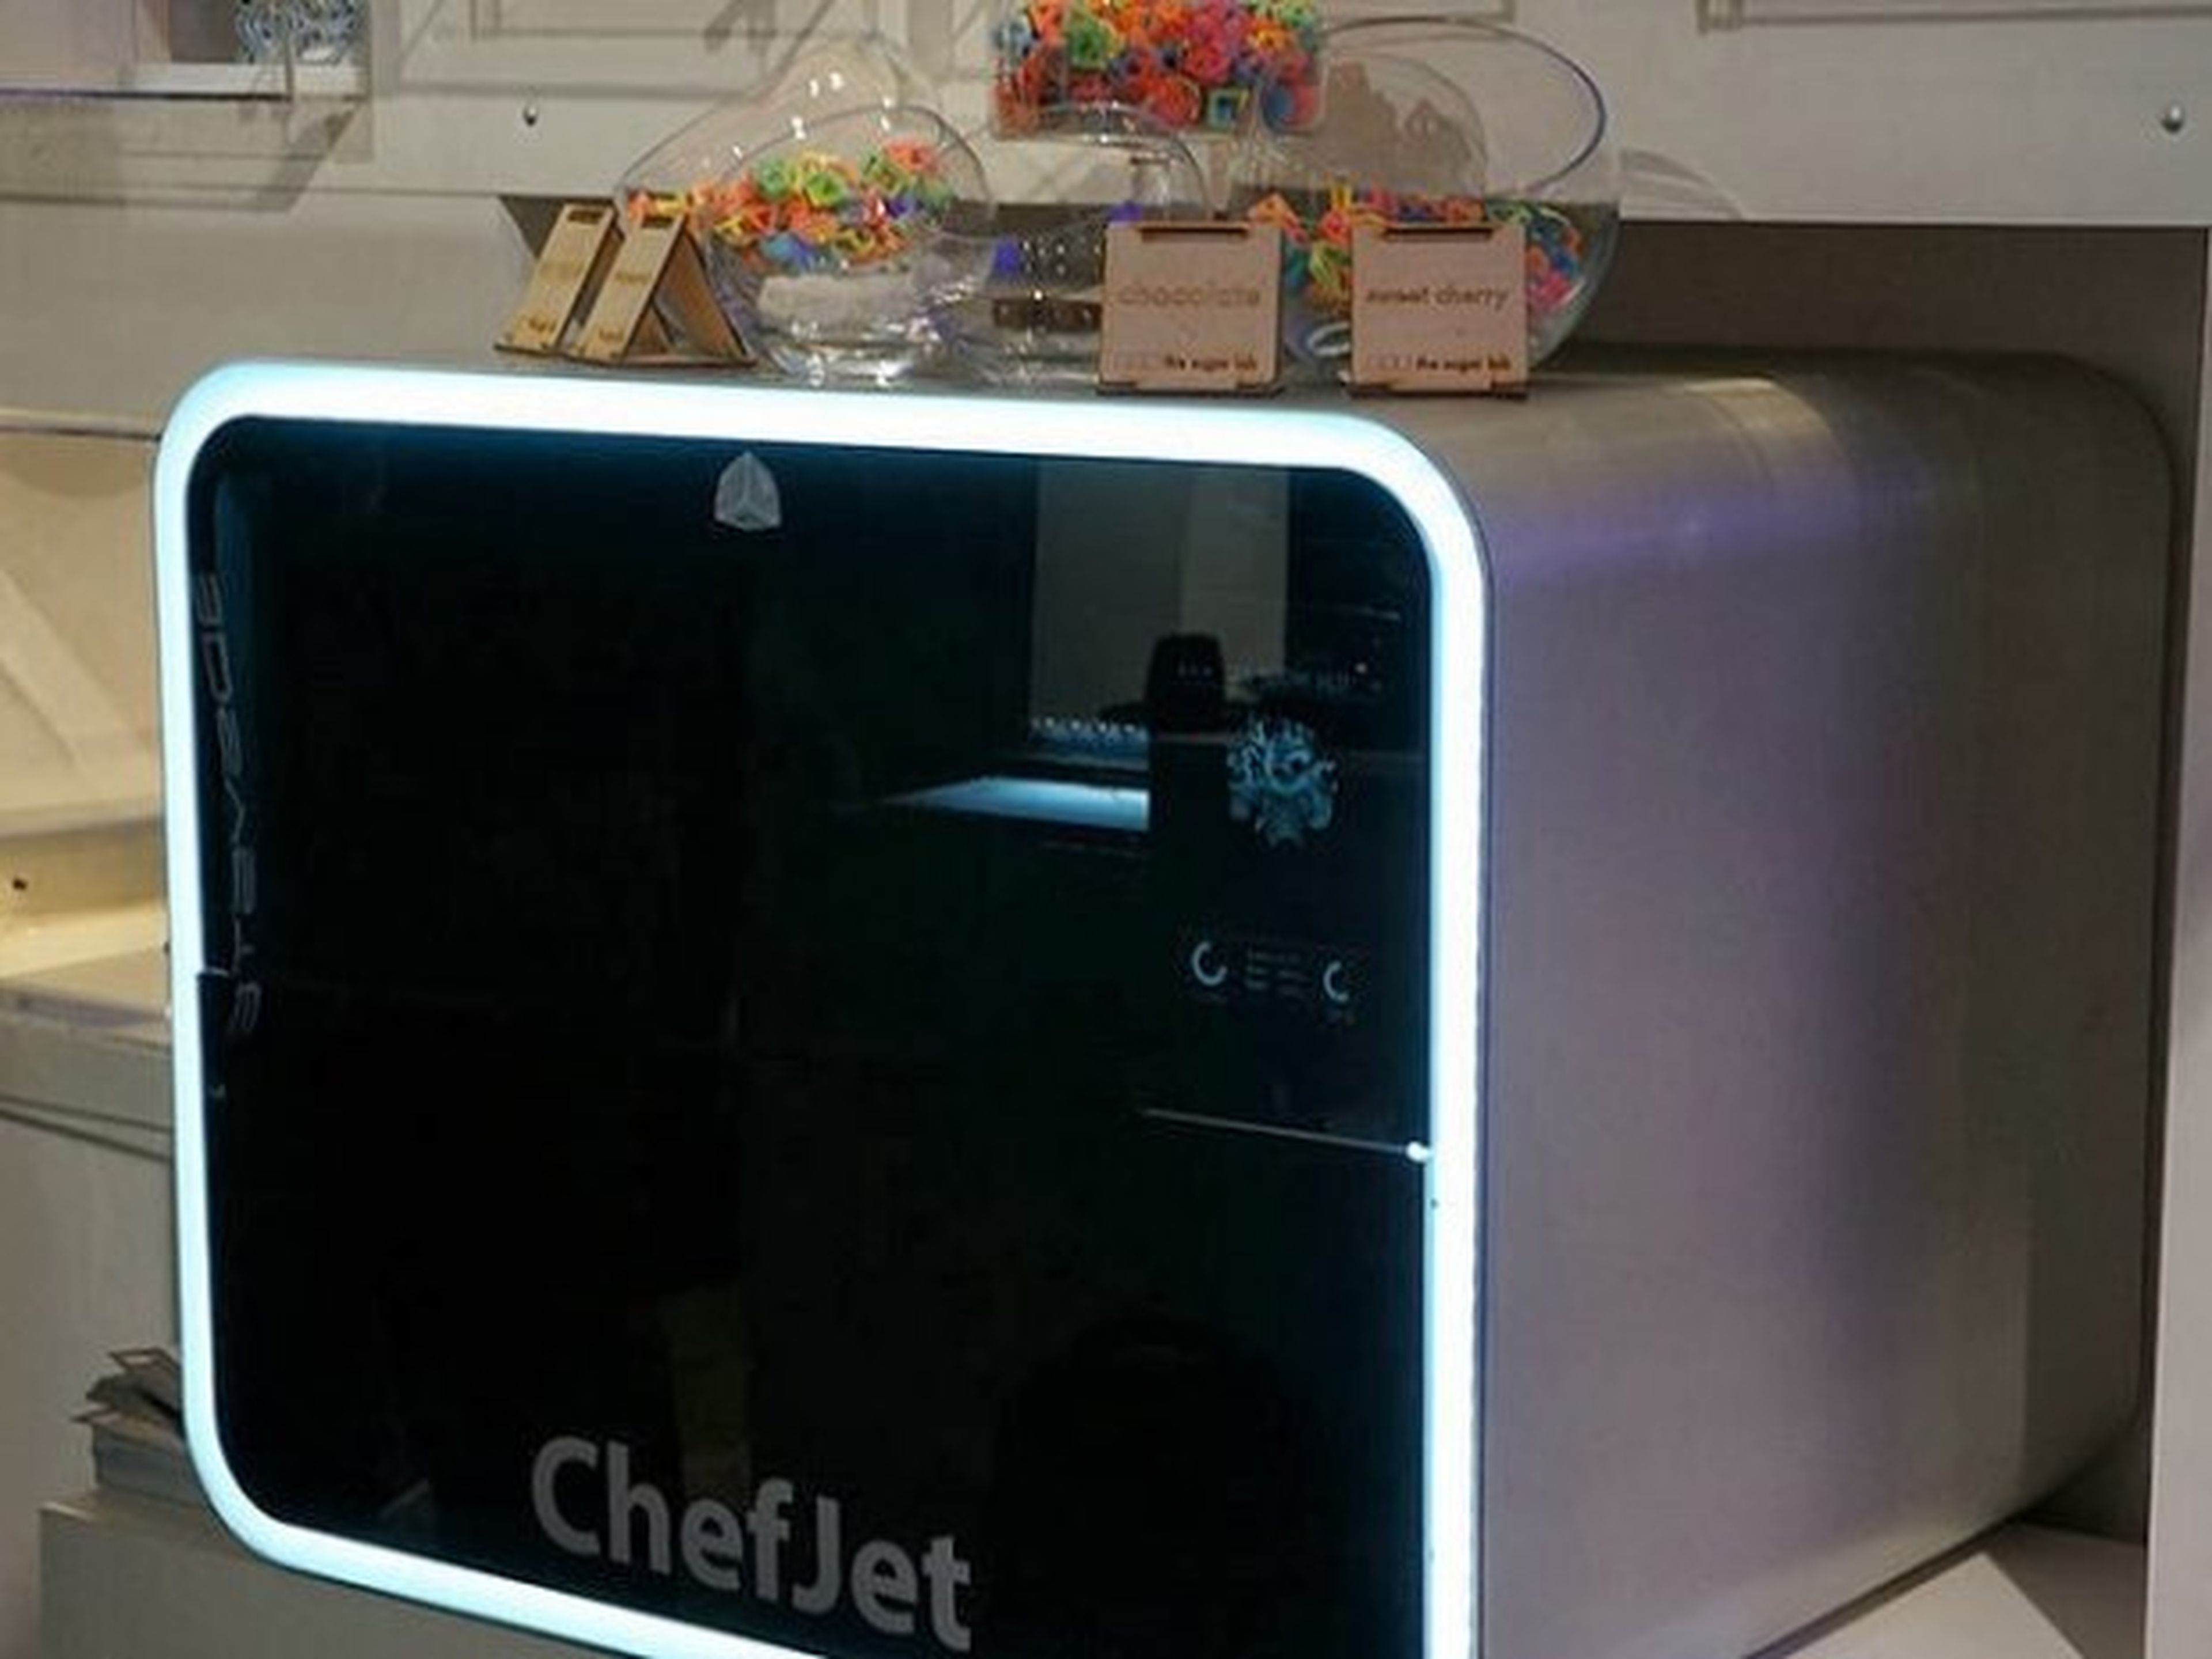 ChefJet3D, impresora 3D ¡de comida! presentada en CES 2014